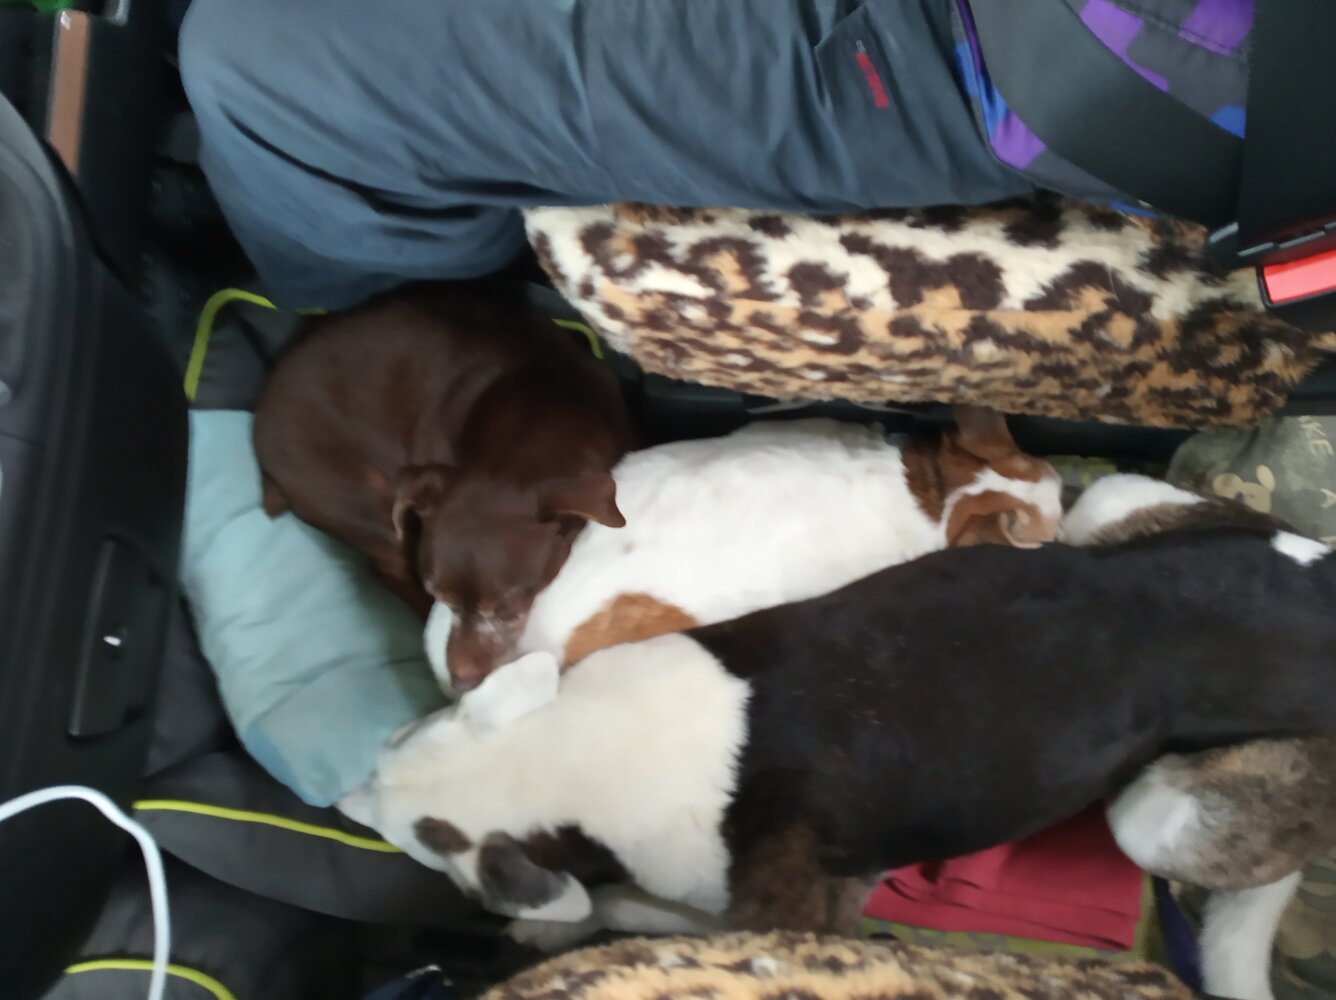 snuggle dogs in camper.jpg